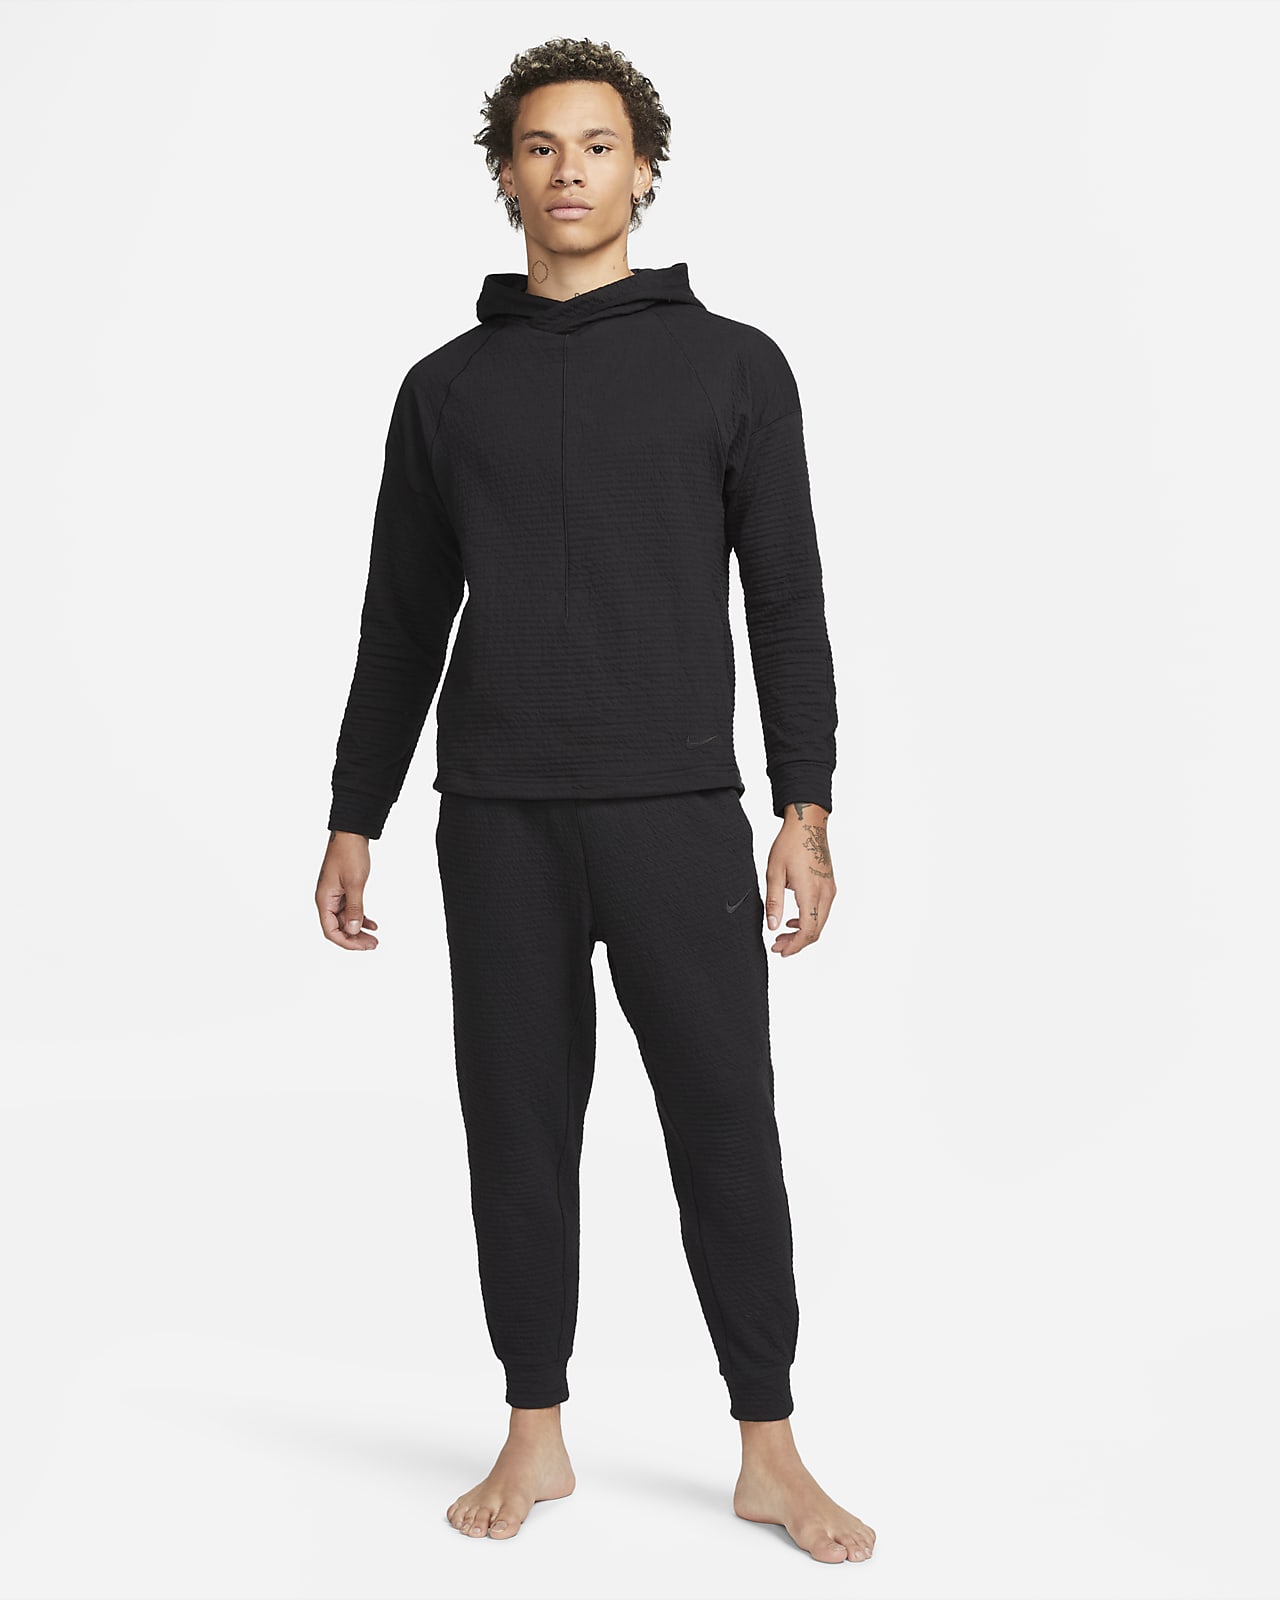 Nike Yoga Dri-FIT Pants Black / Grey The Nike Yoga Dri-FIT Pants